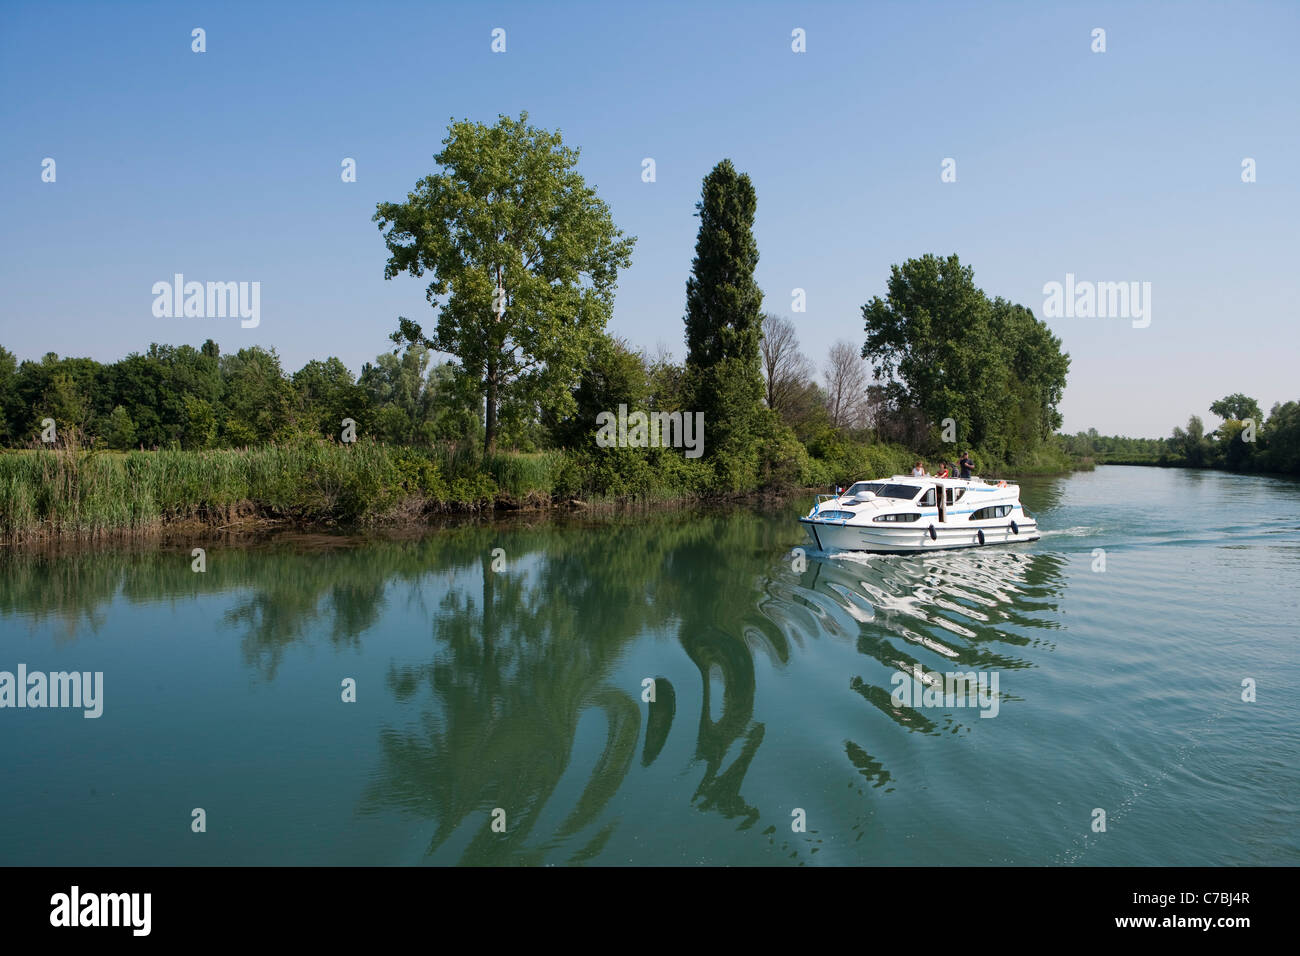 Le Boat Magnifique casa galleggiante sul fiume Stella, fiume nei pressi di Precenicco, Friuli Venezia Giulia, Italia Foto Stock